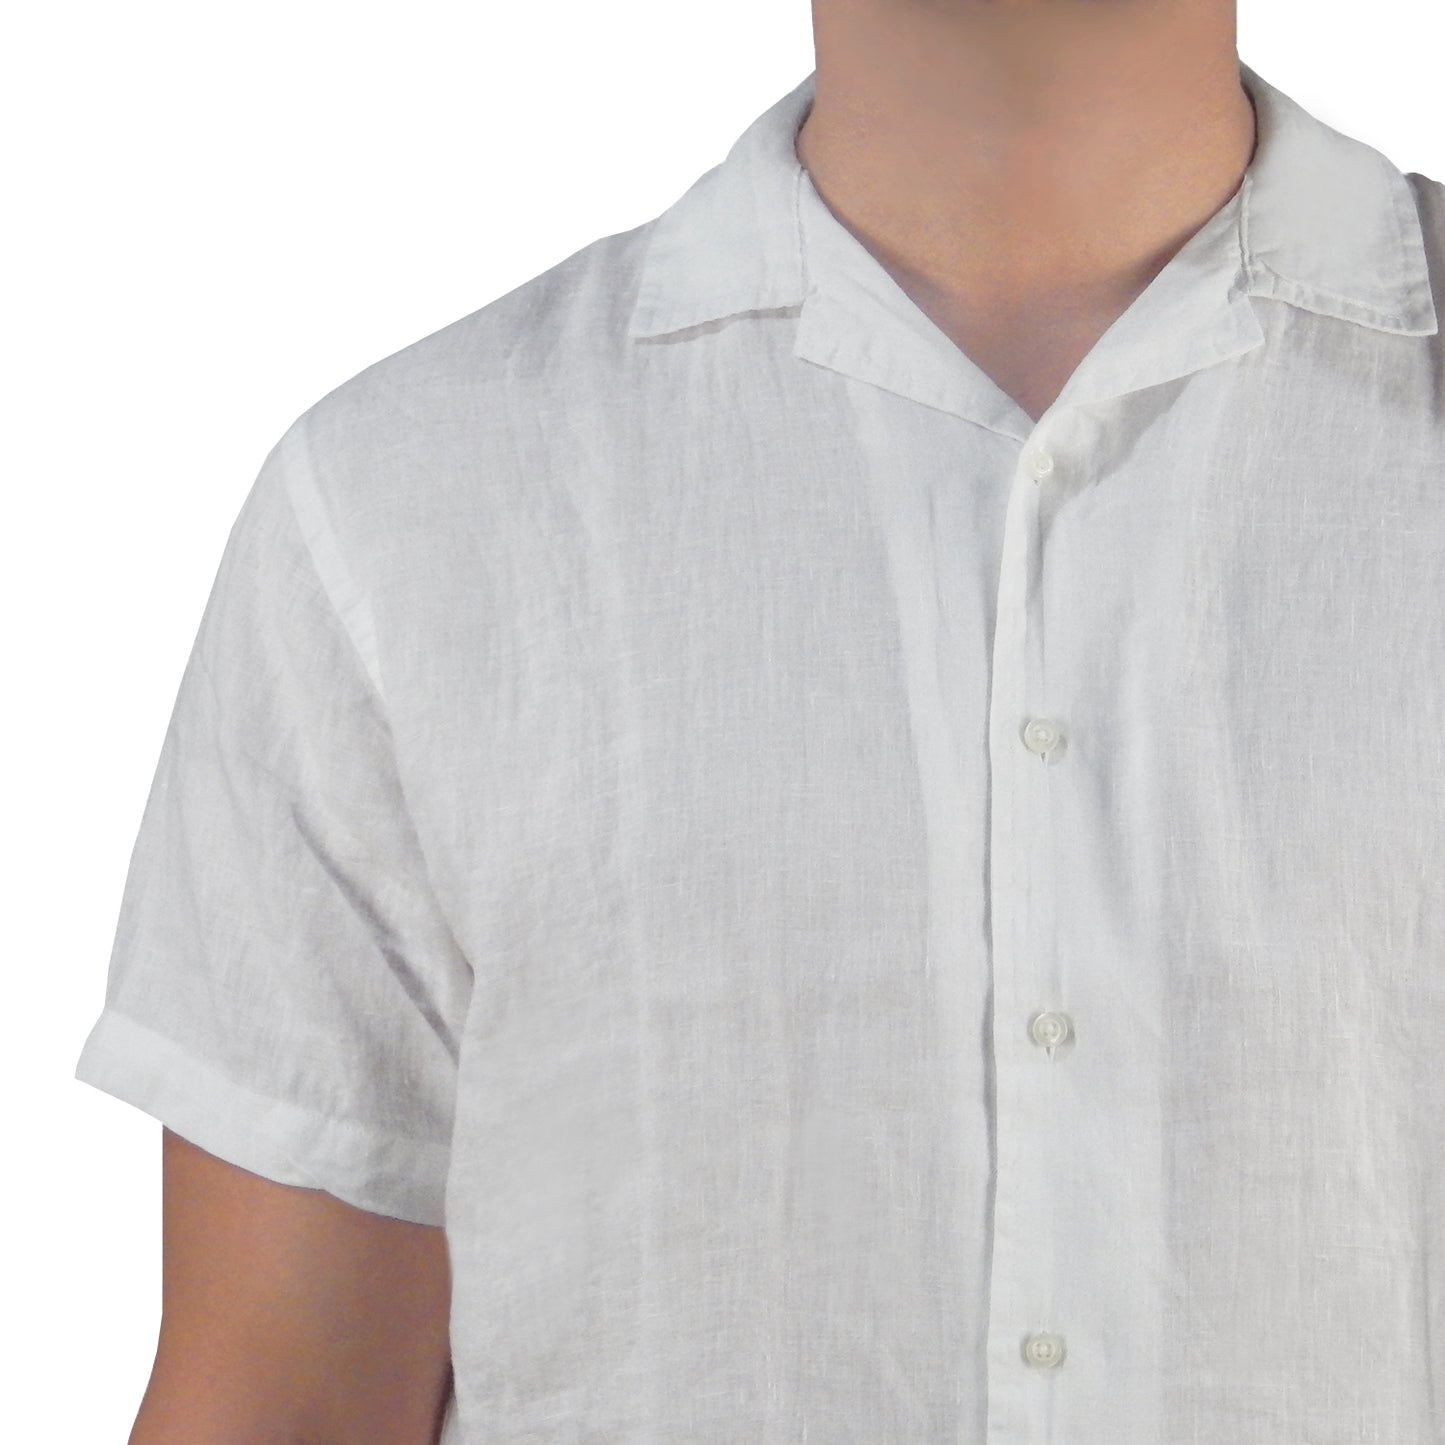 White Linen Shirt 930-1211 107 WHITE